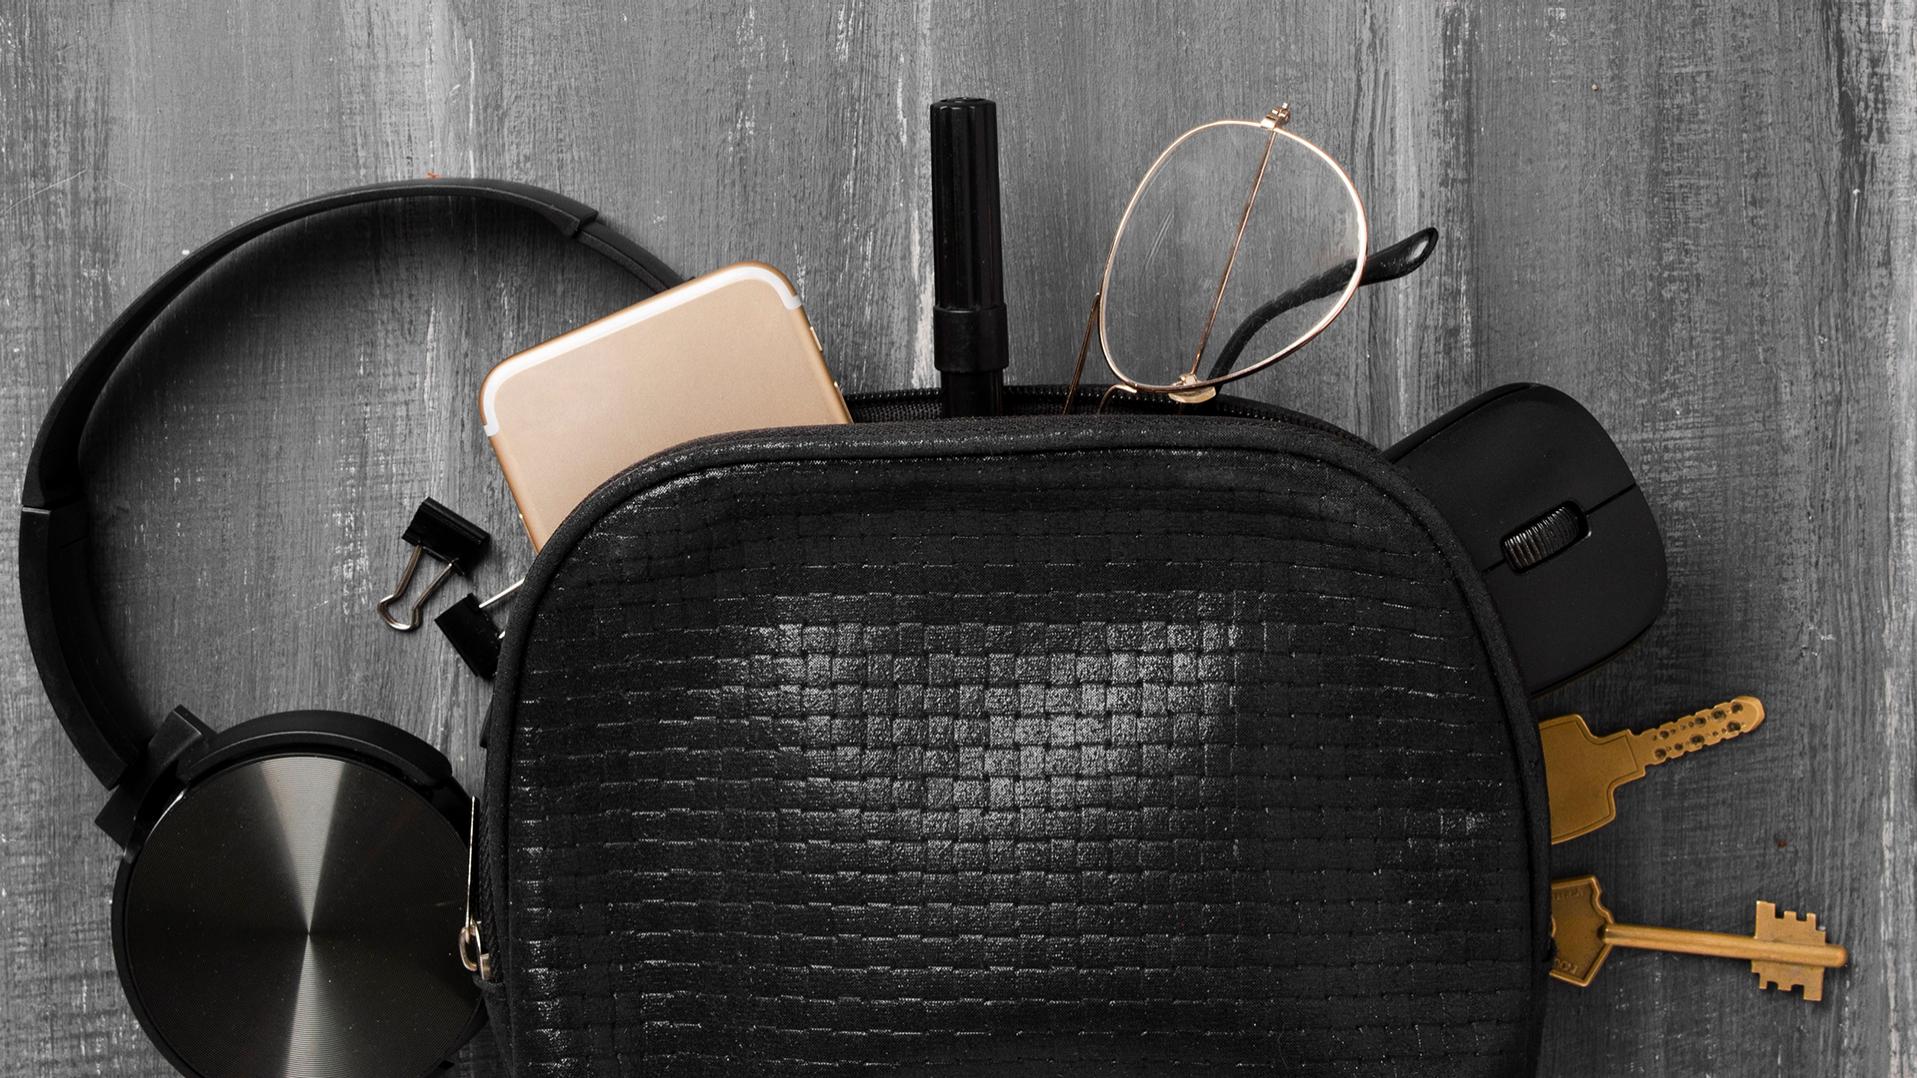 Una borsetta nera da cui sono scivolati fuori cuffie, cellulare, chiavi, graffette, penna, mouse per PC e occhiali con lenti ZEISS dotate di trattamenti DuraVision, che ora giacciono per metà sul pavimento grigio.